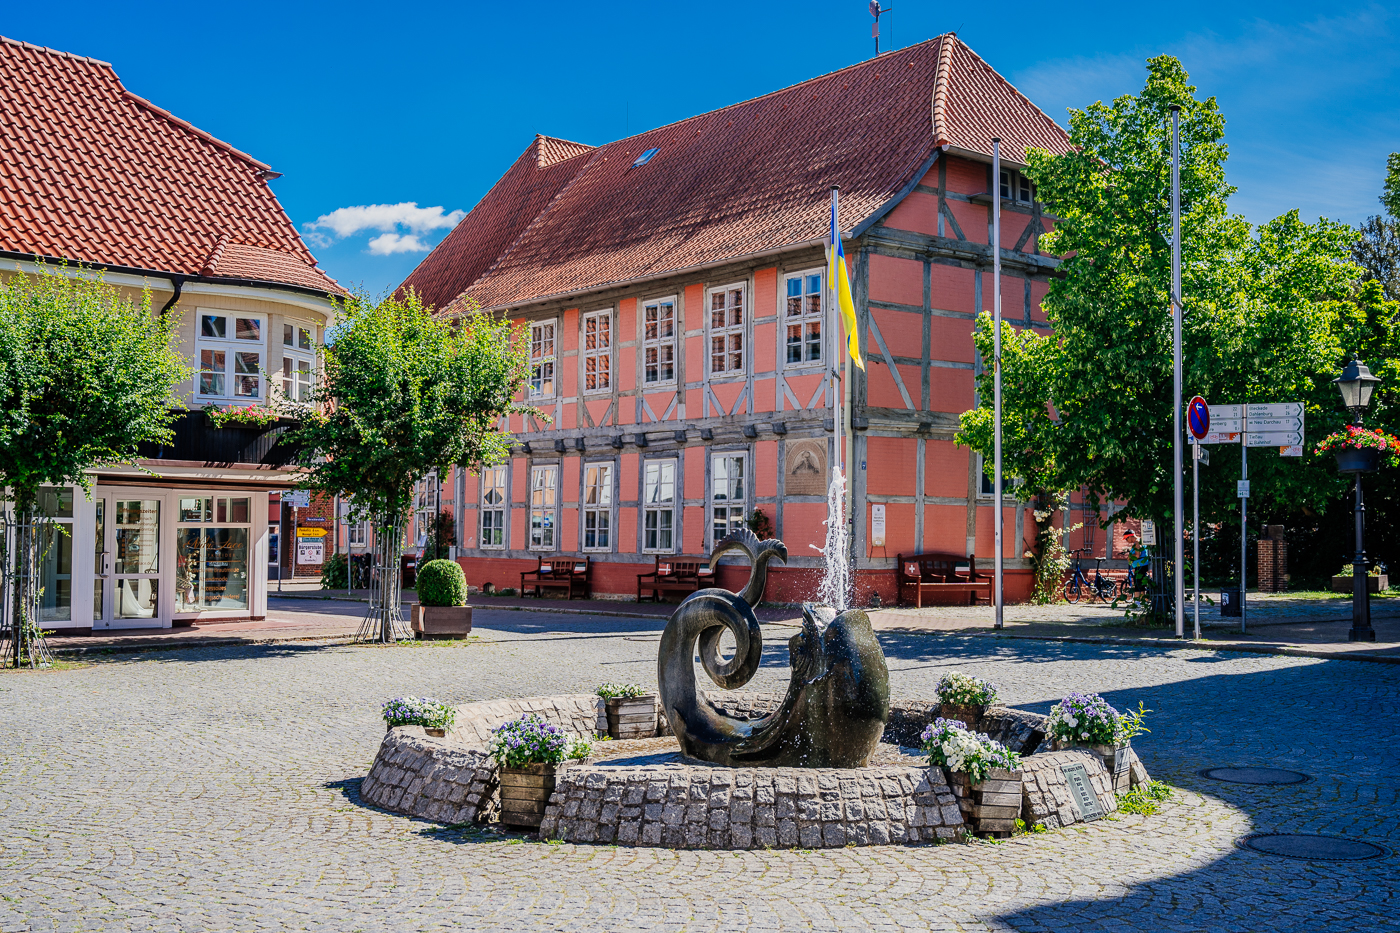 Bronzebrunnen am Markt in der Altstadt von Hitzacker